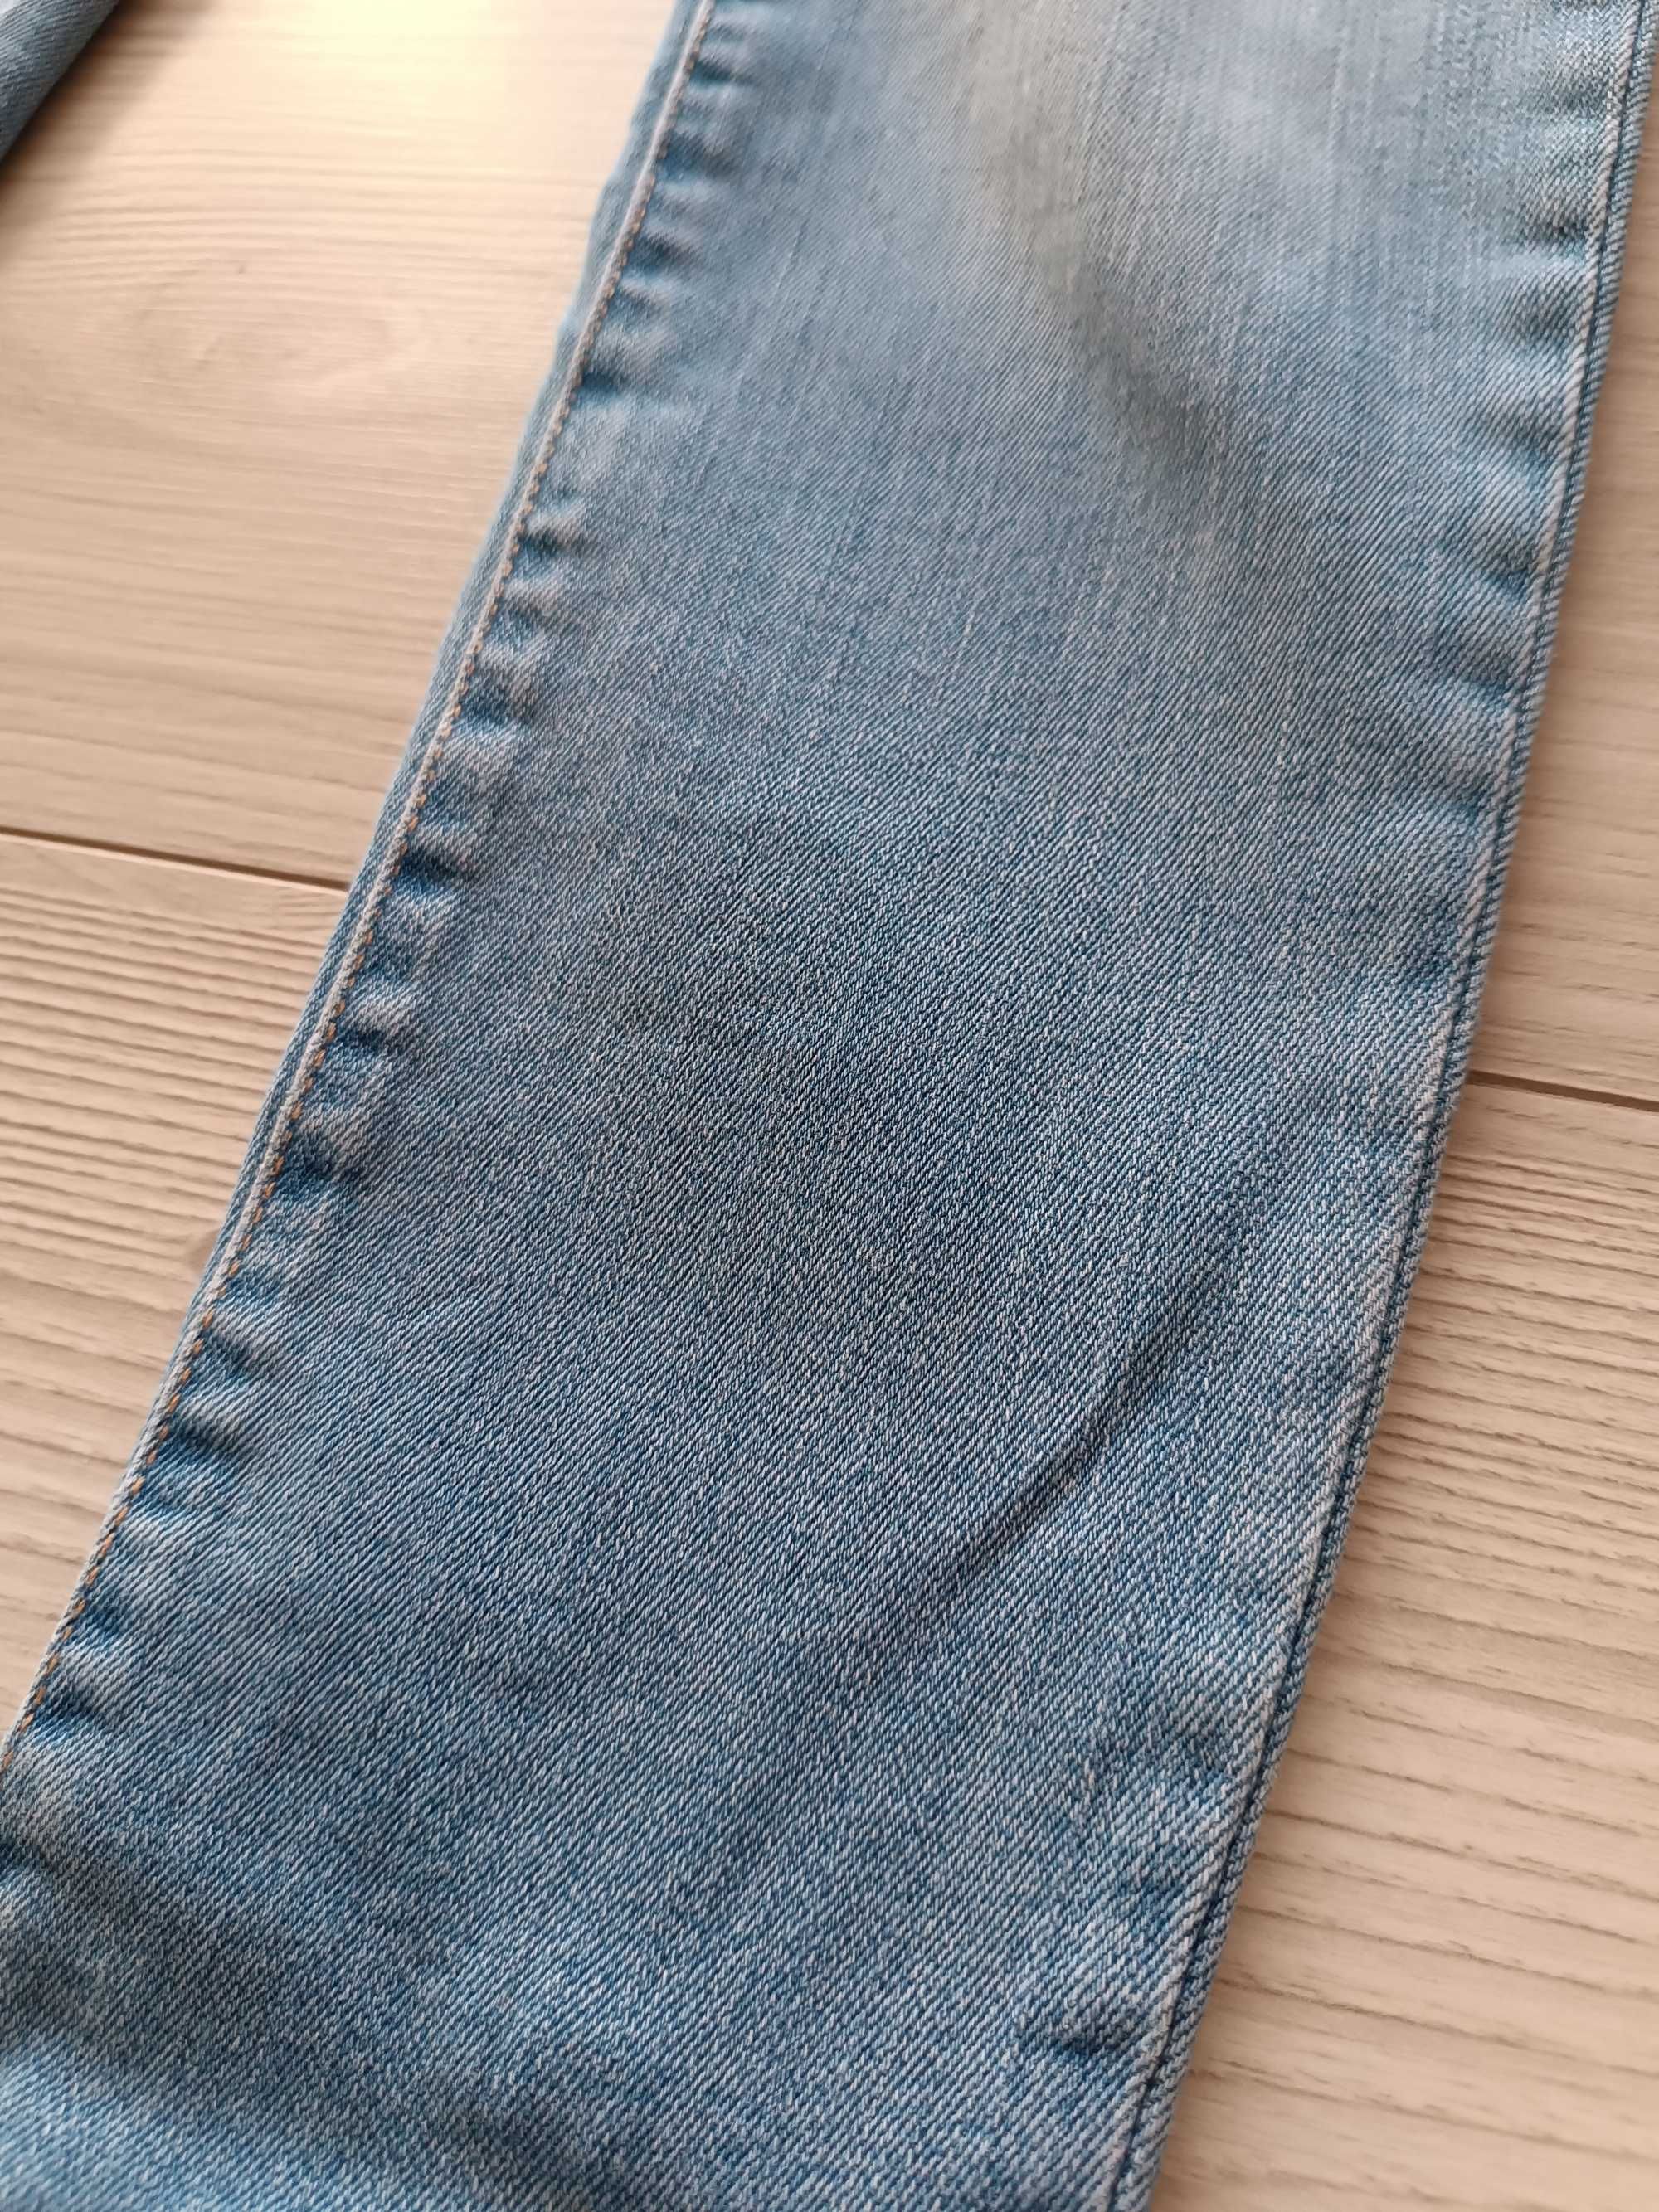 Spodnie dziewczęce jeansowe Skinny używane, rozmiar 152 cm